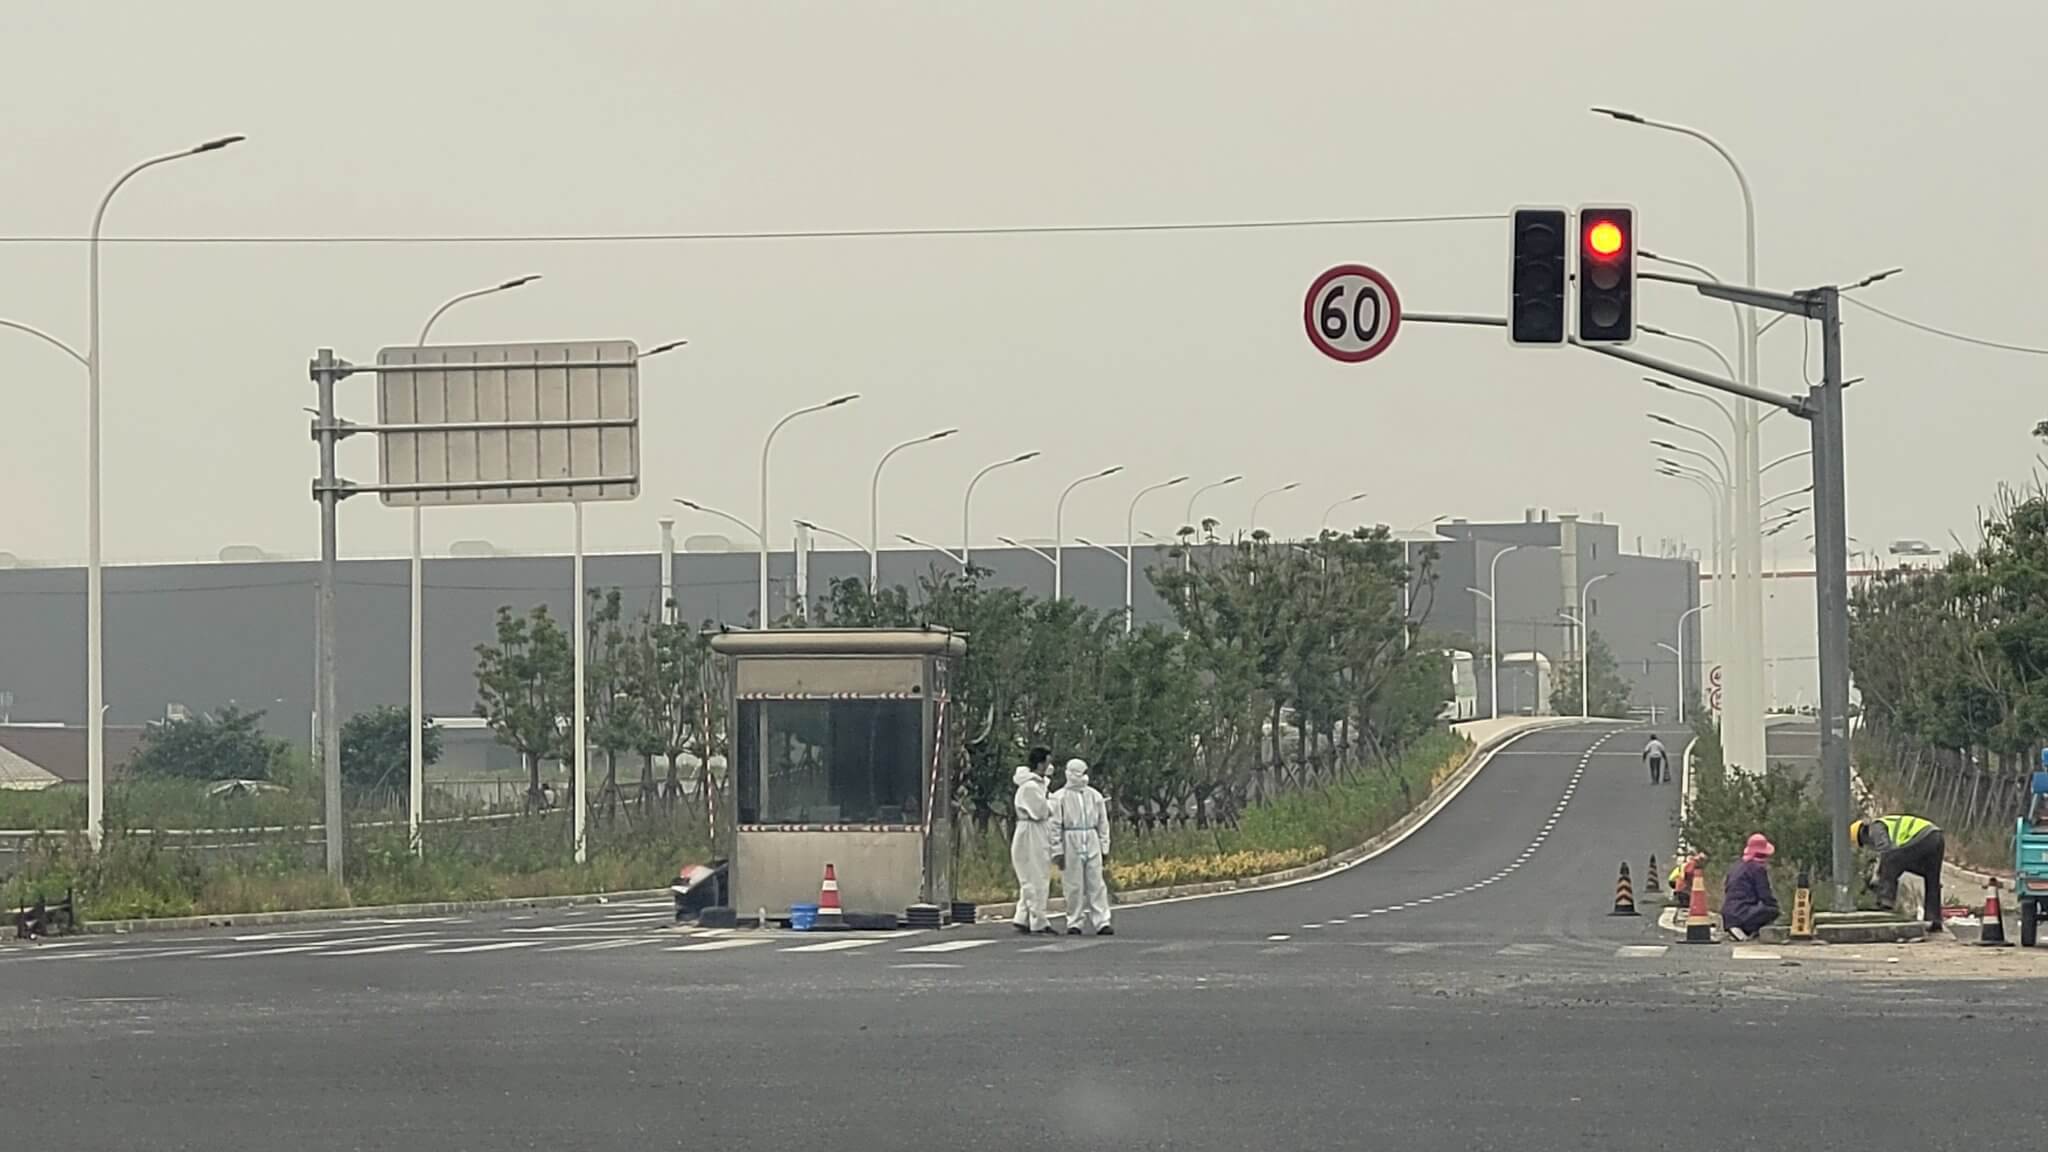 Tesla Gigafactory Shanghai fonctionne normalement alors que la Chine tente d’empêcher la propagation de Covid-19